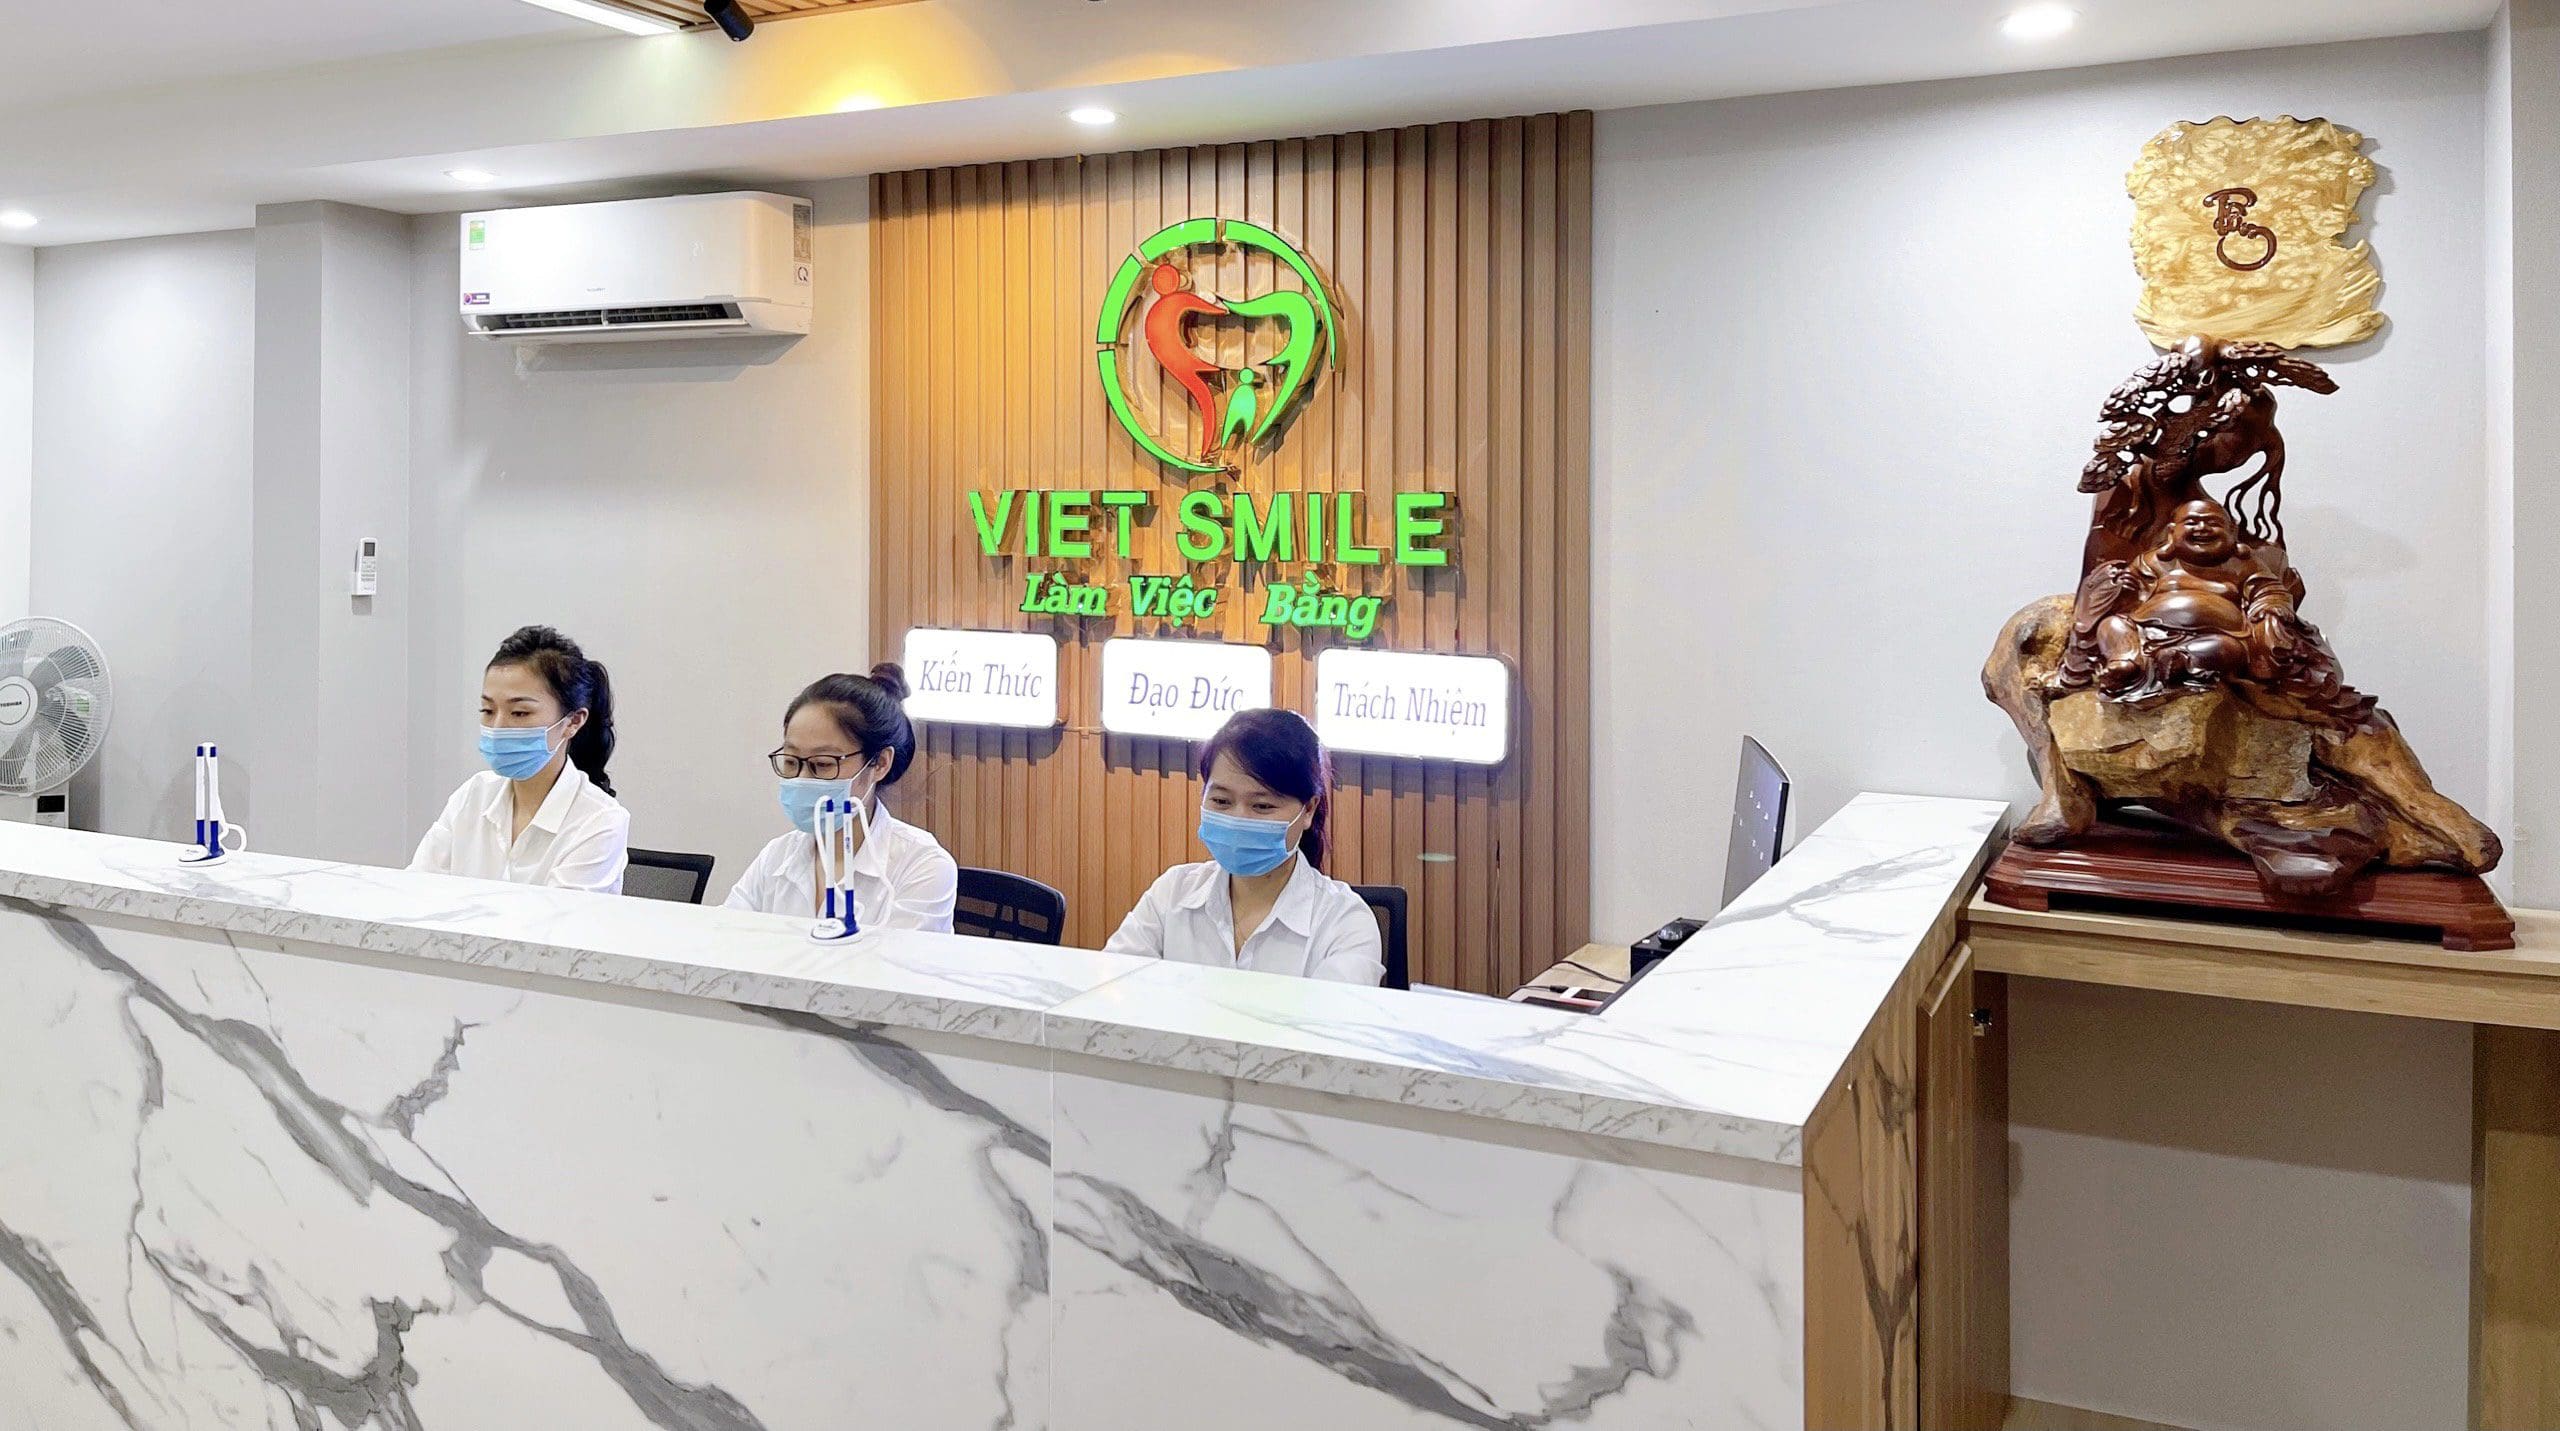 Việt smile cầu giấy sẵn sàng phục vụ quý khách